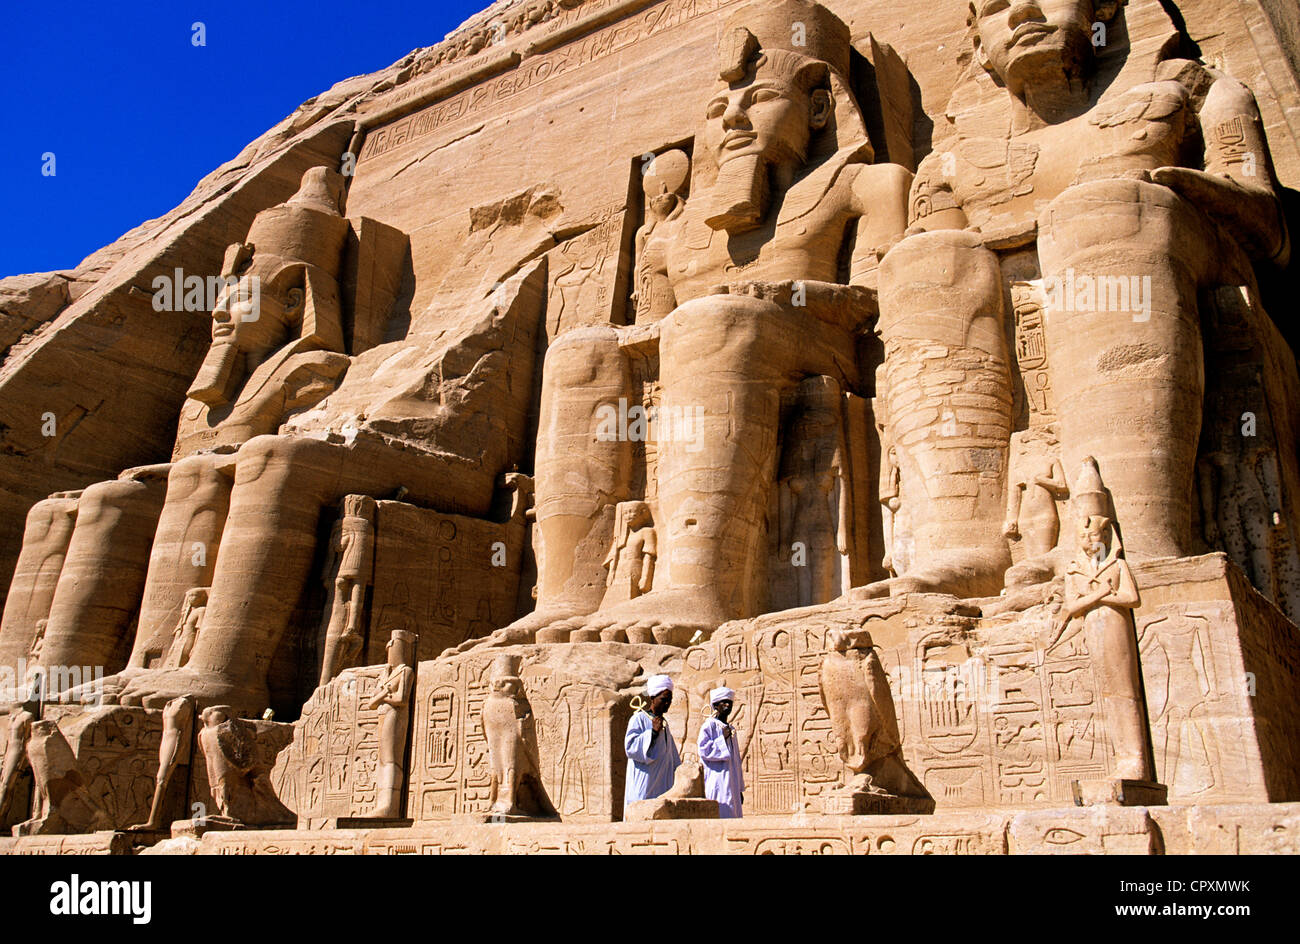 Ober-Ägypten, Nubien, Abu Simbel, Ägypten Website gelistet als Weltkulturerbe der UNESCO, Wächter im Tempel Ramses II Stockfoto